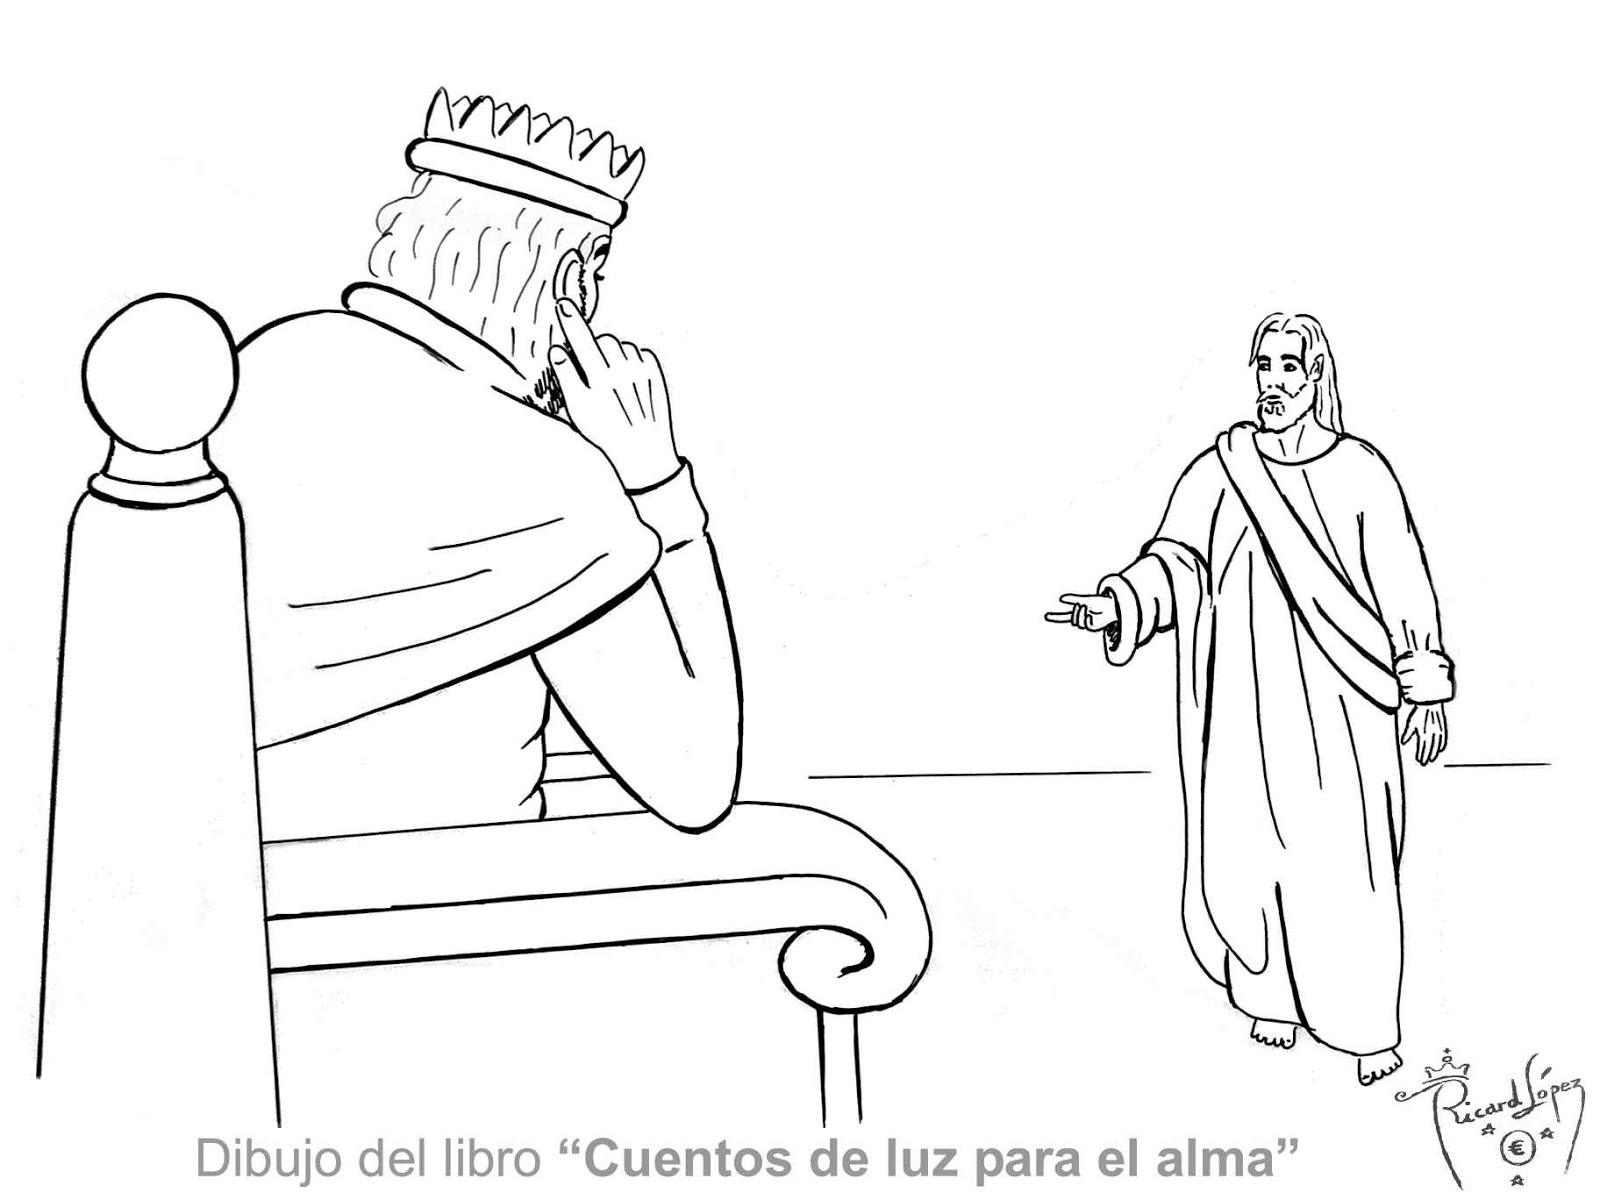 Dibujos muy originales para colorear de Ricard López: Dibujo de un rey